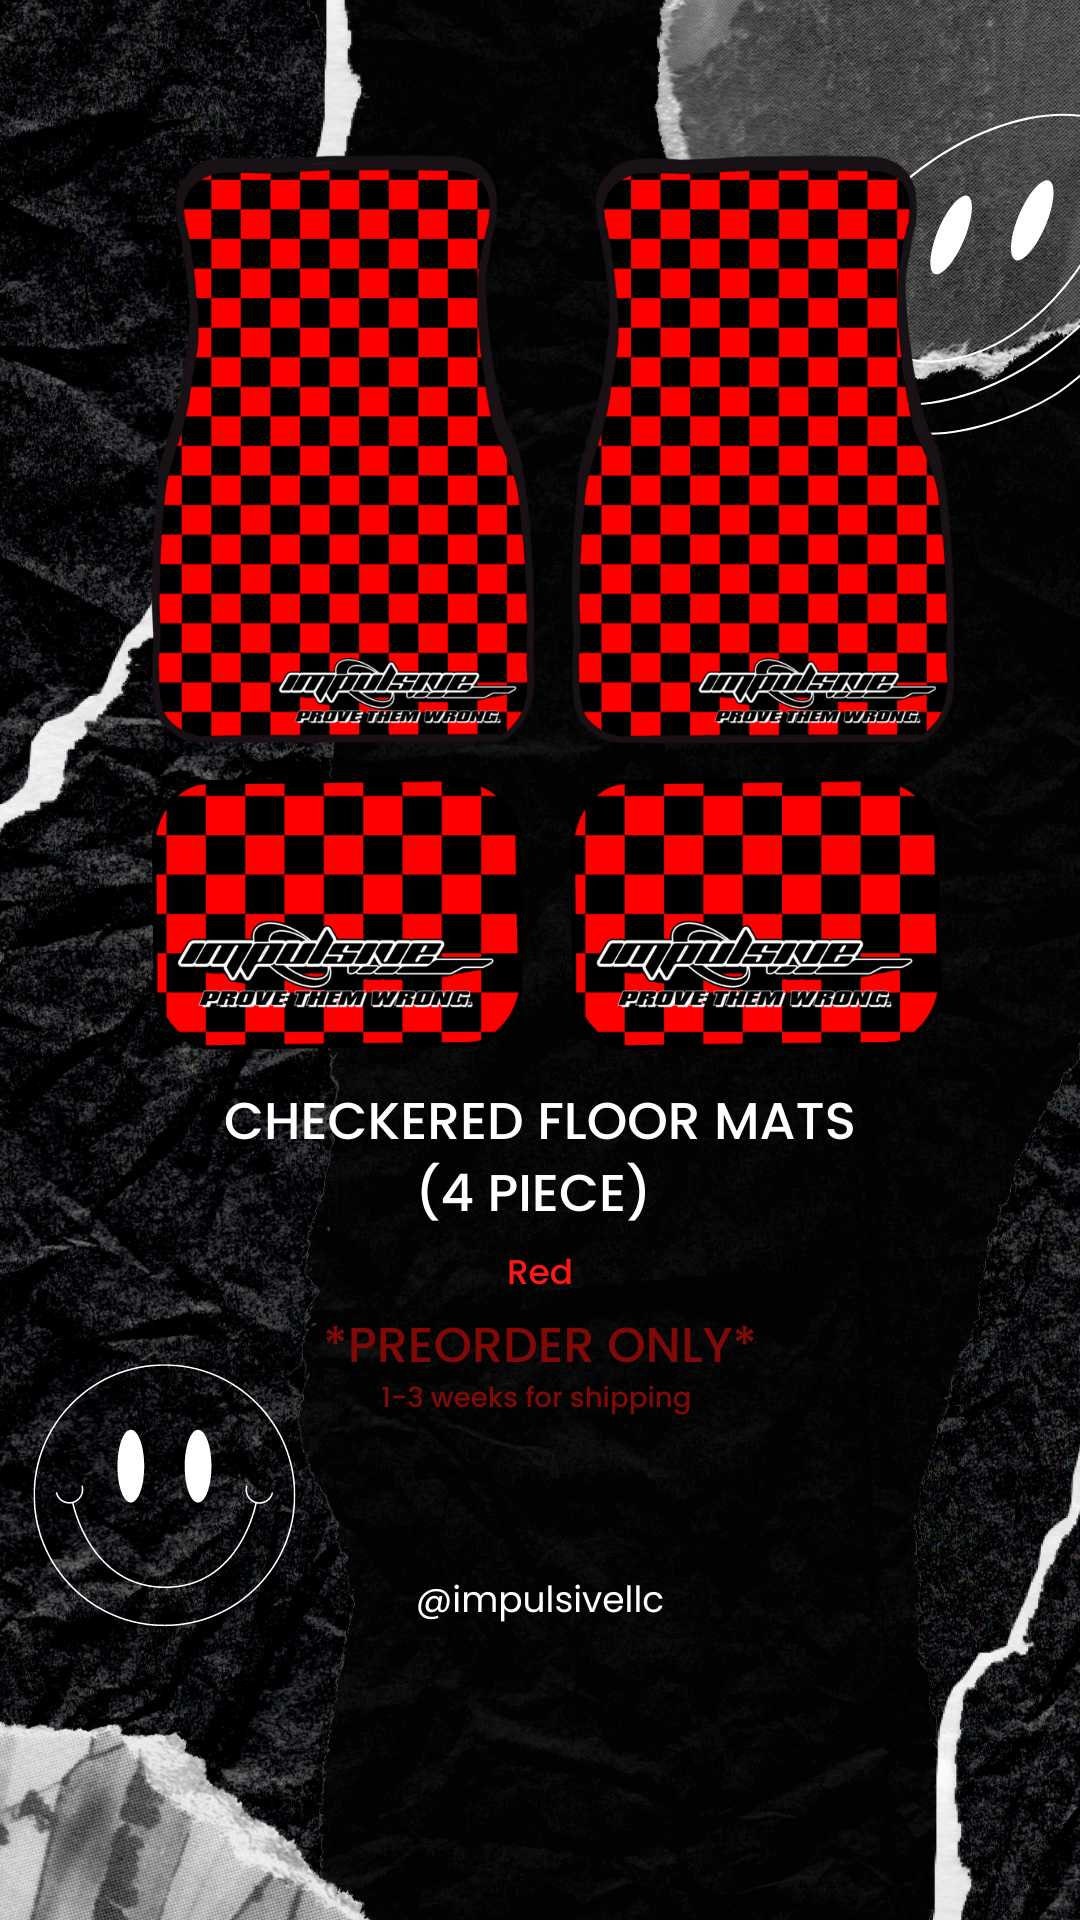 Bright Red Diamond & Red Carpets Car Floor Mats Full Set V2.0